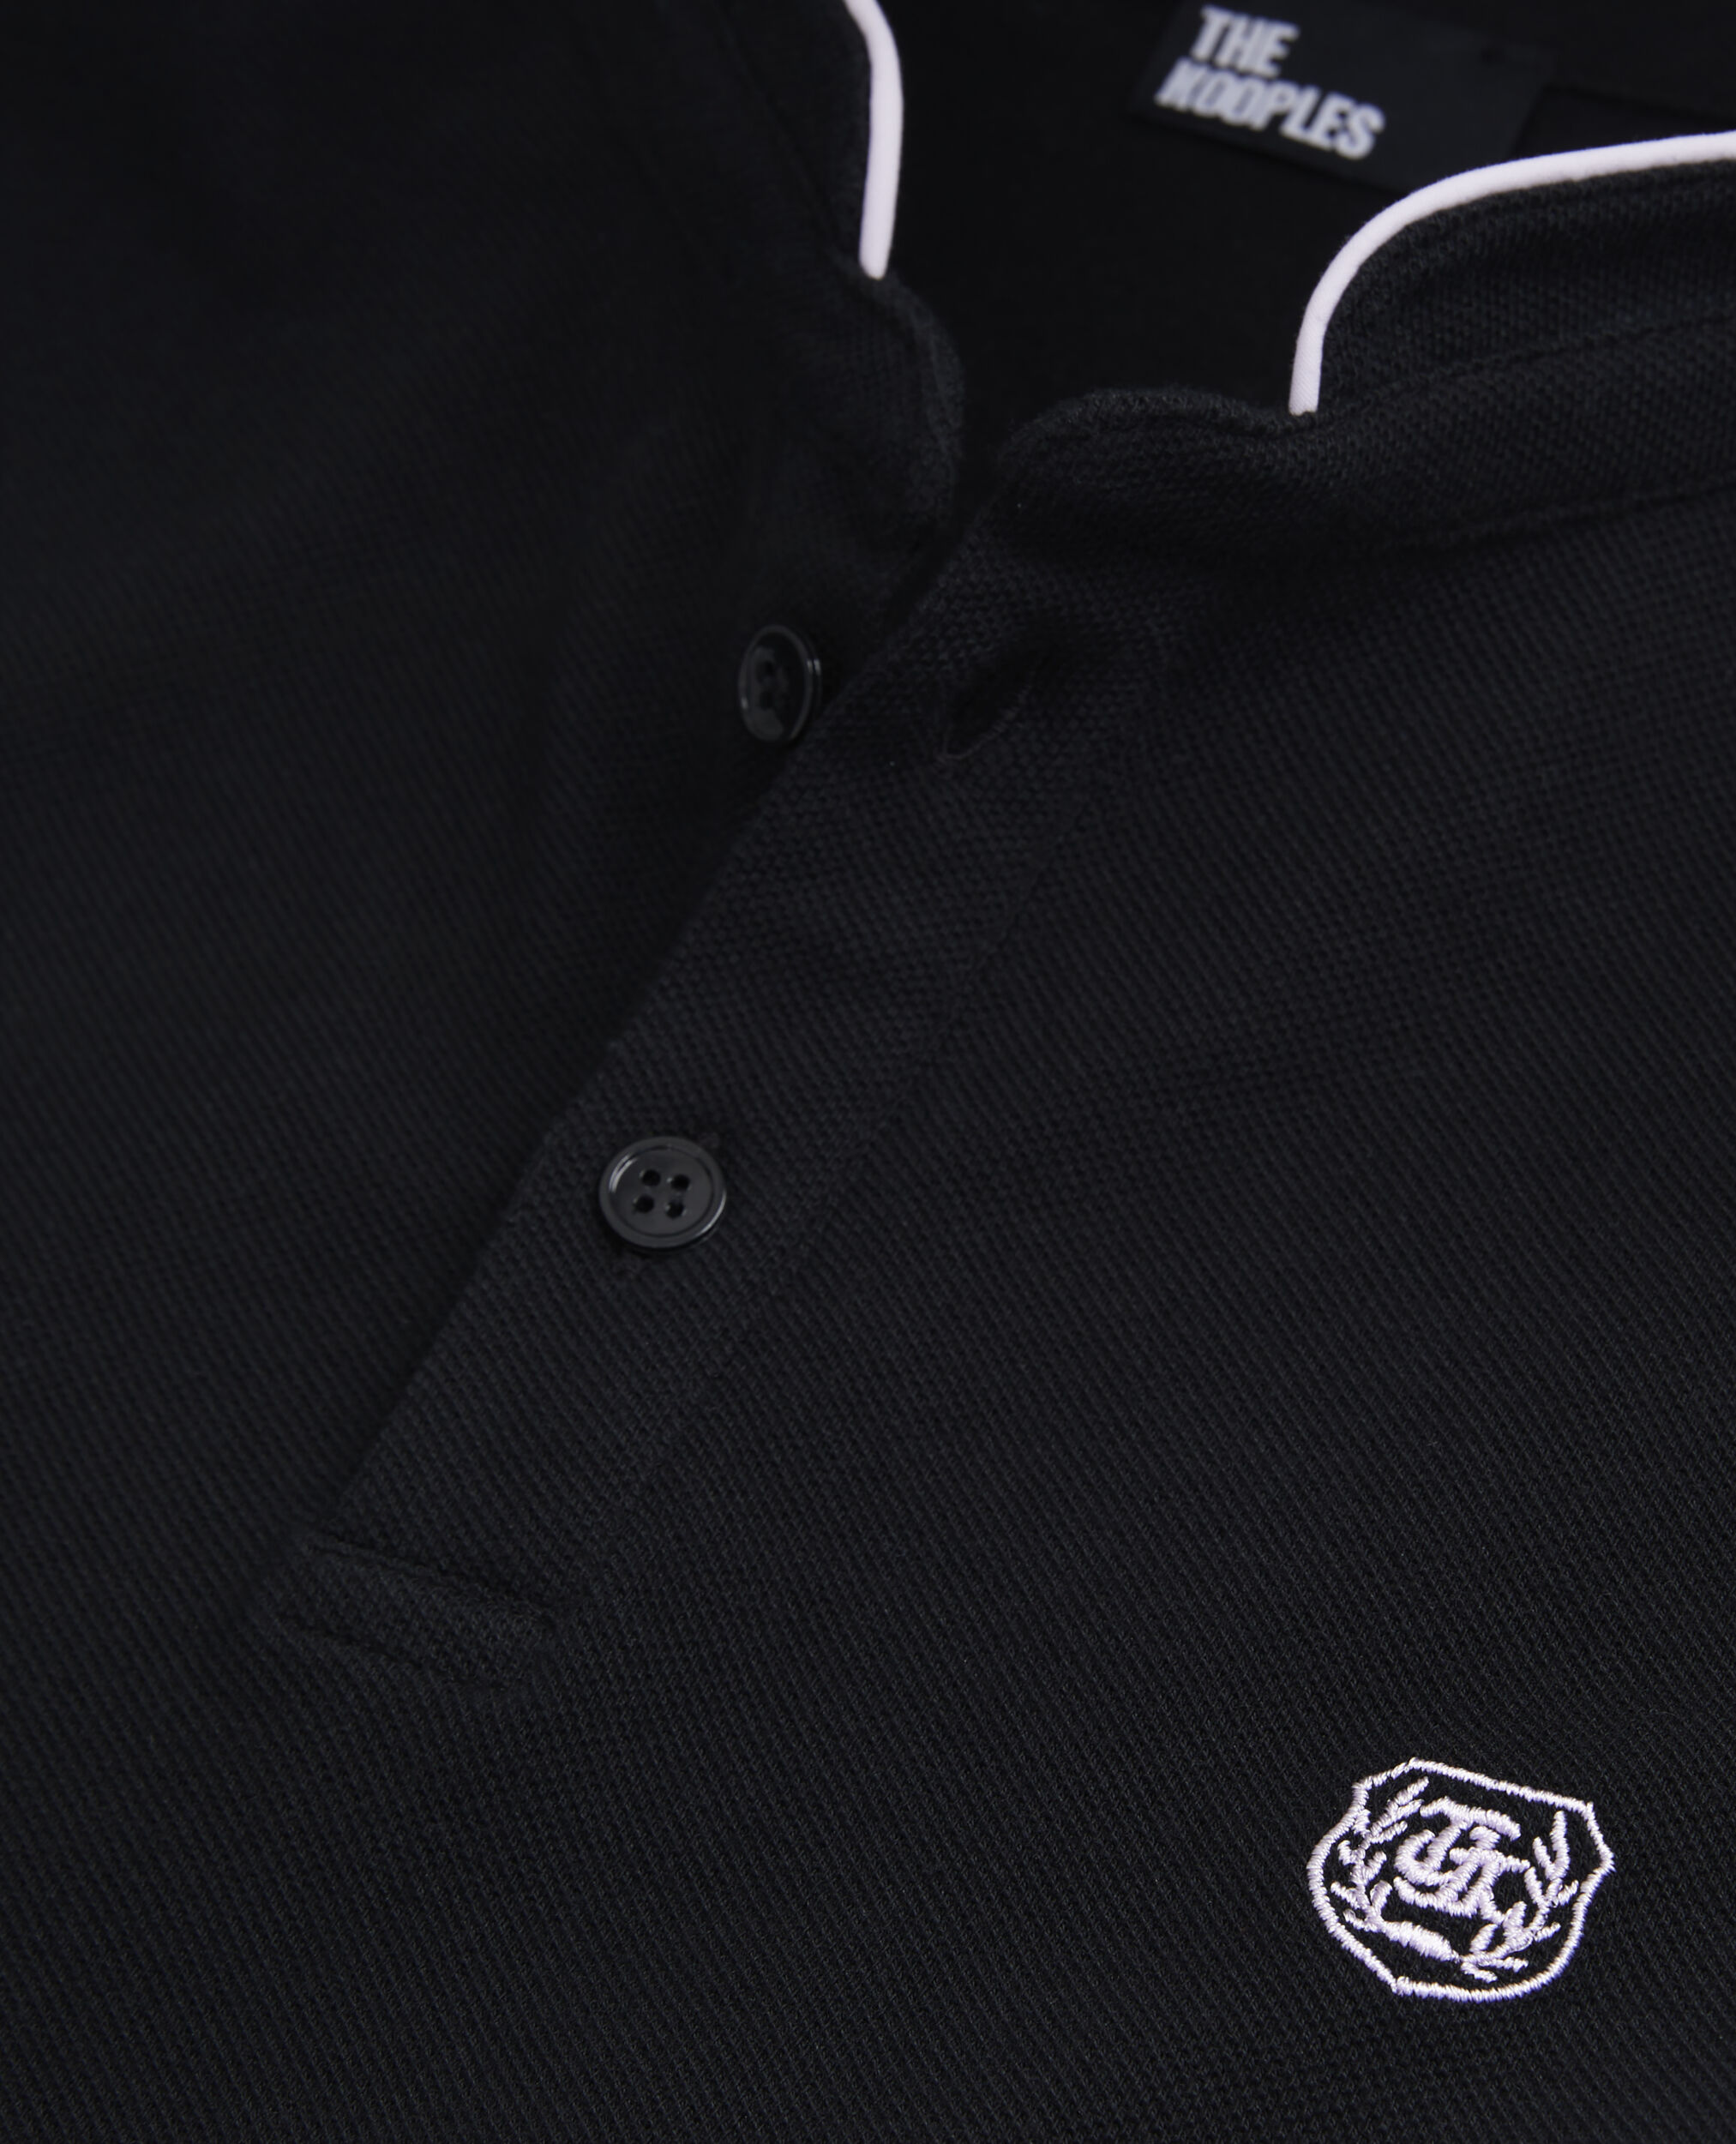 Camisa polo negra algodón, BLACK / PINK, hi-res image number null